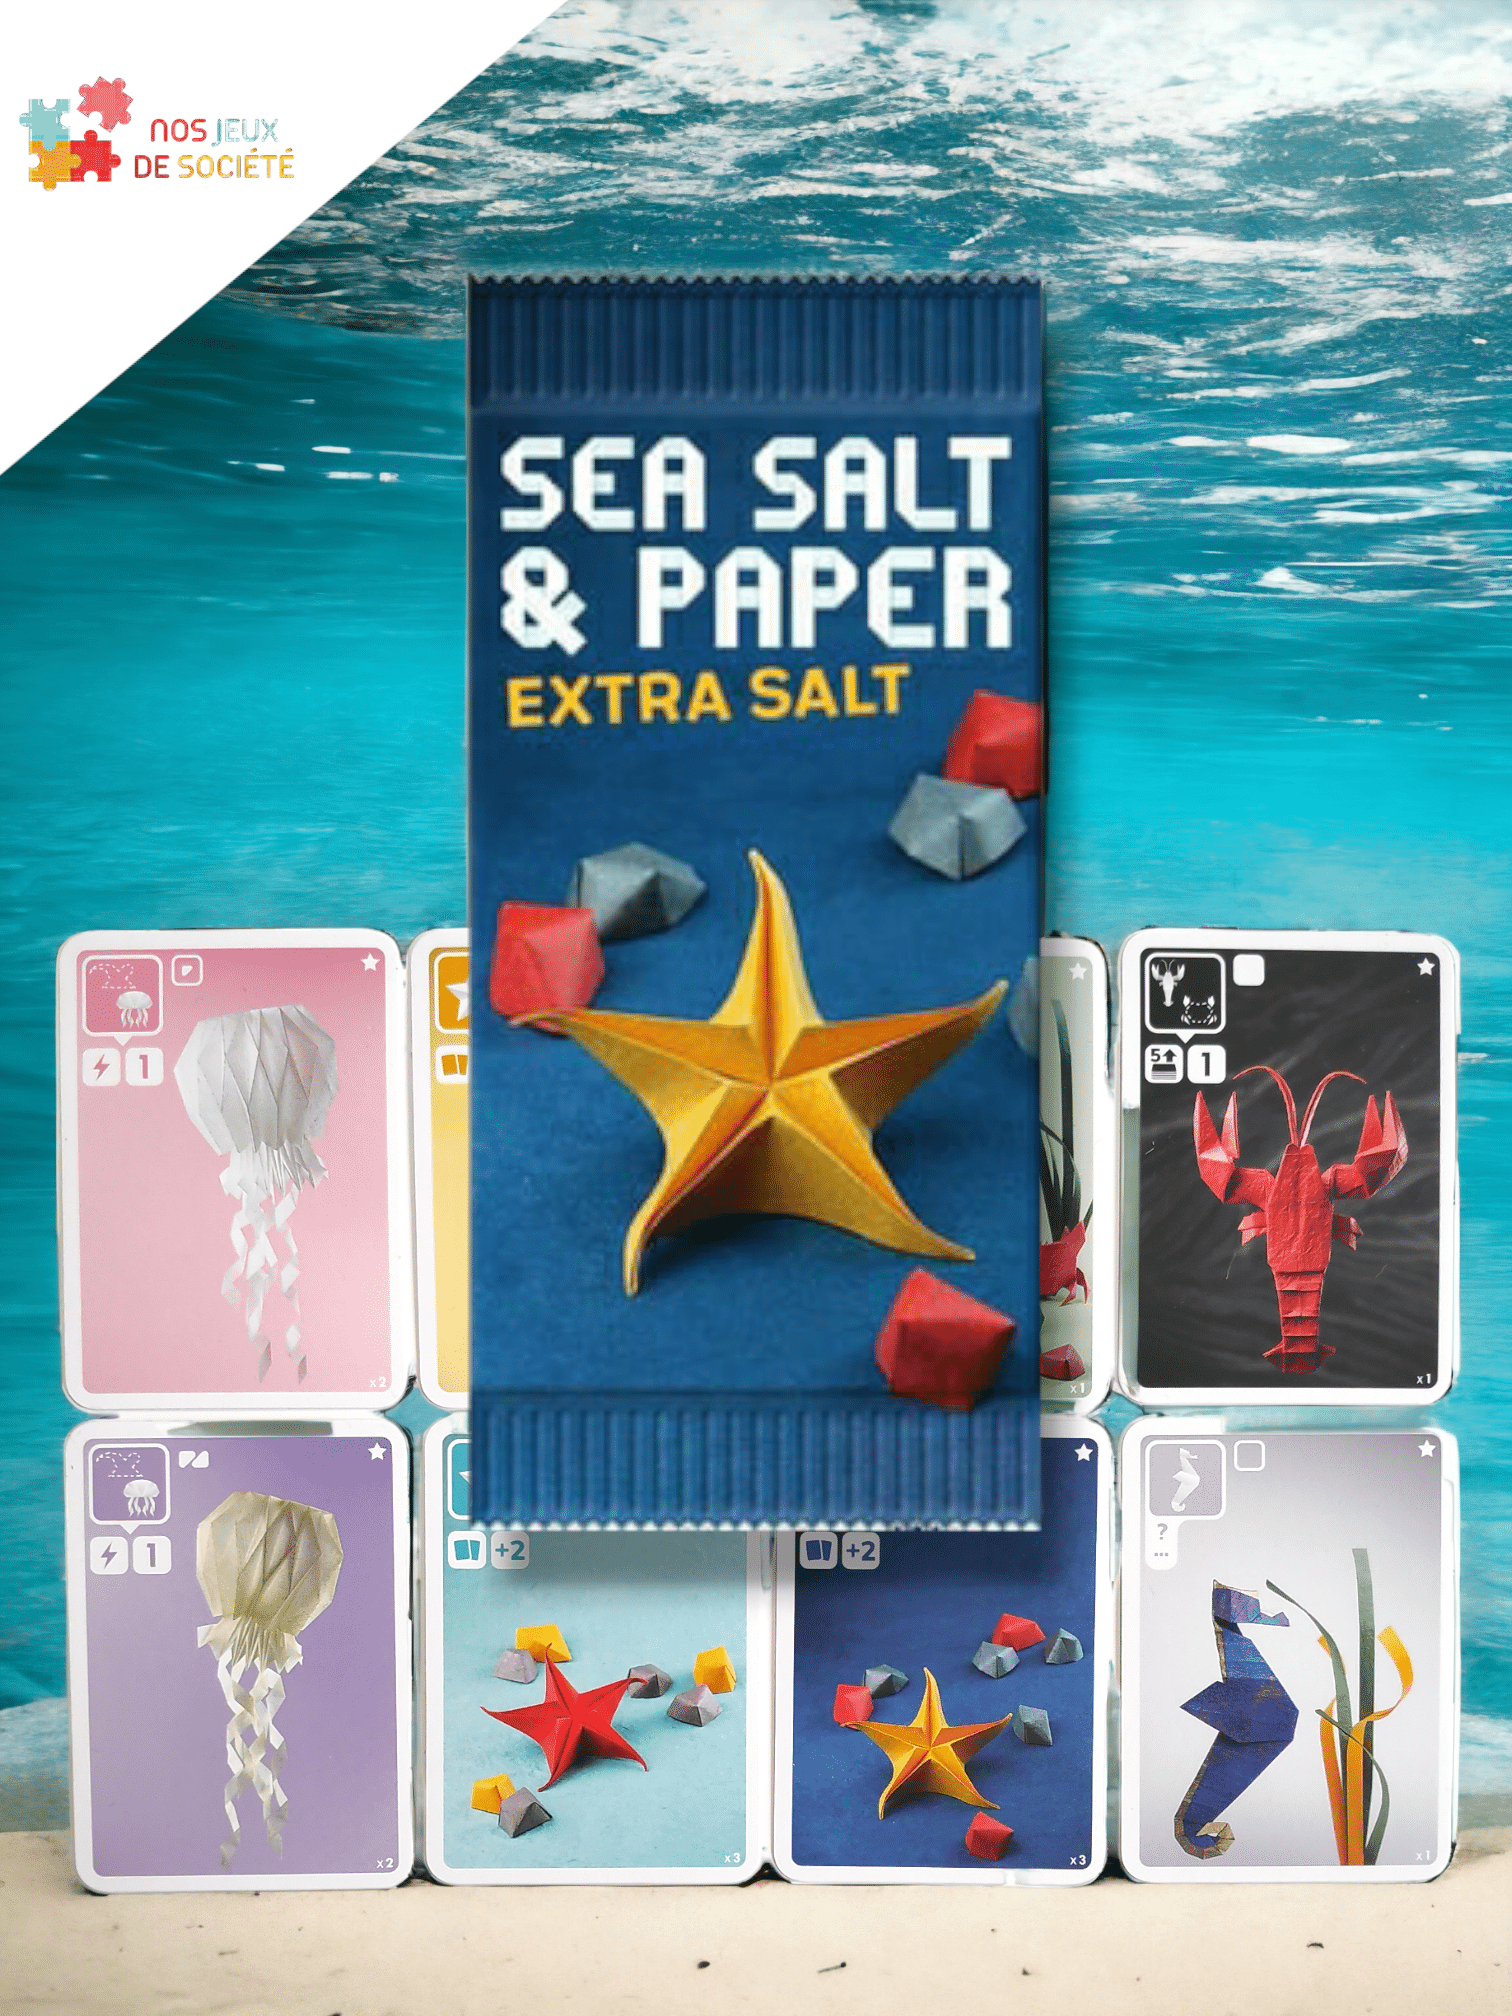 Sea Salt and Paper : Test, avis et conseils pour jouer.